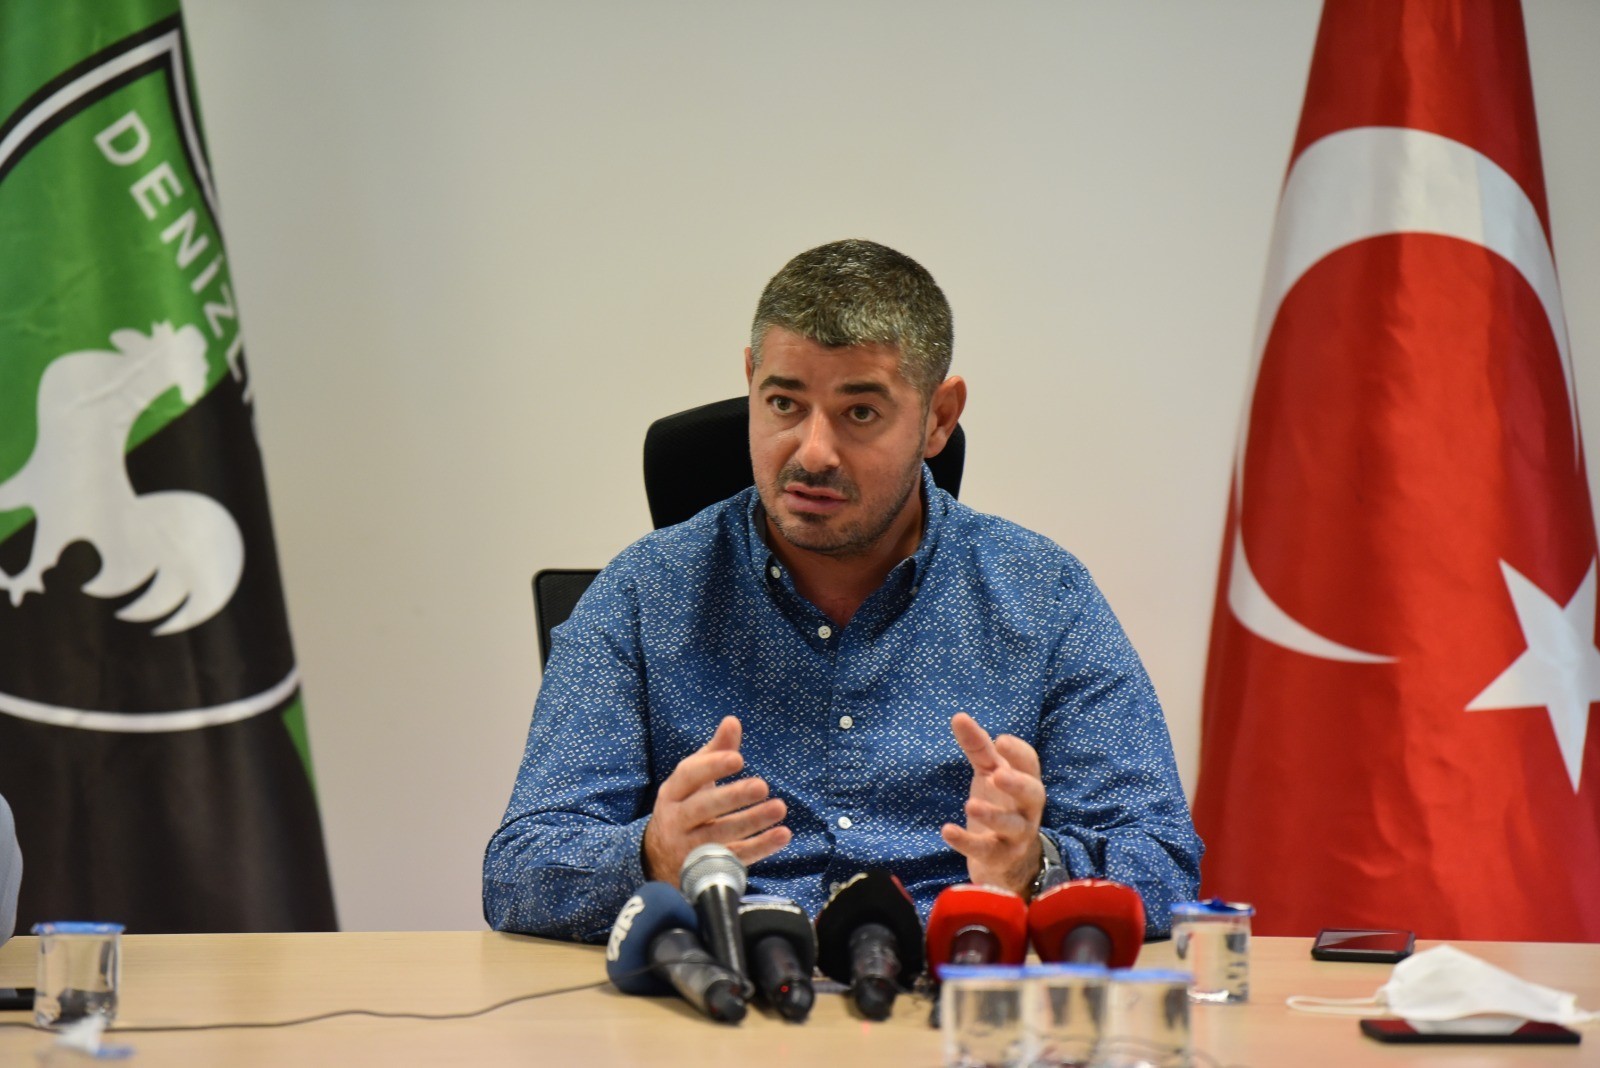 Milliyetçi Hareket Partisinden; Denizli Milletvekili aday adaylığını açıklayan Denizlispor Başkanı Mehmet Uz, genel merkez tarafından listeye alınmadı.